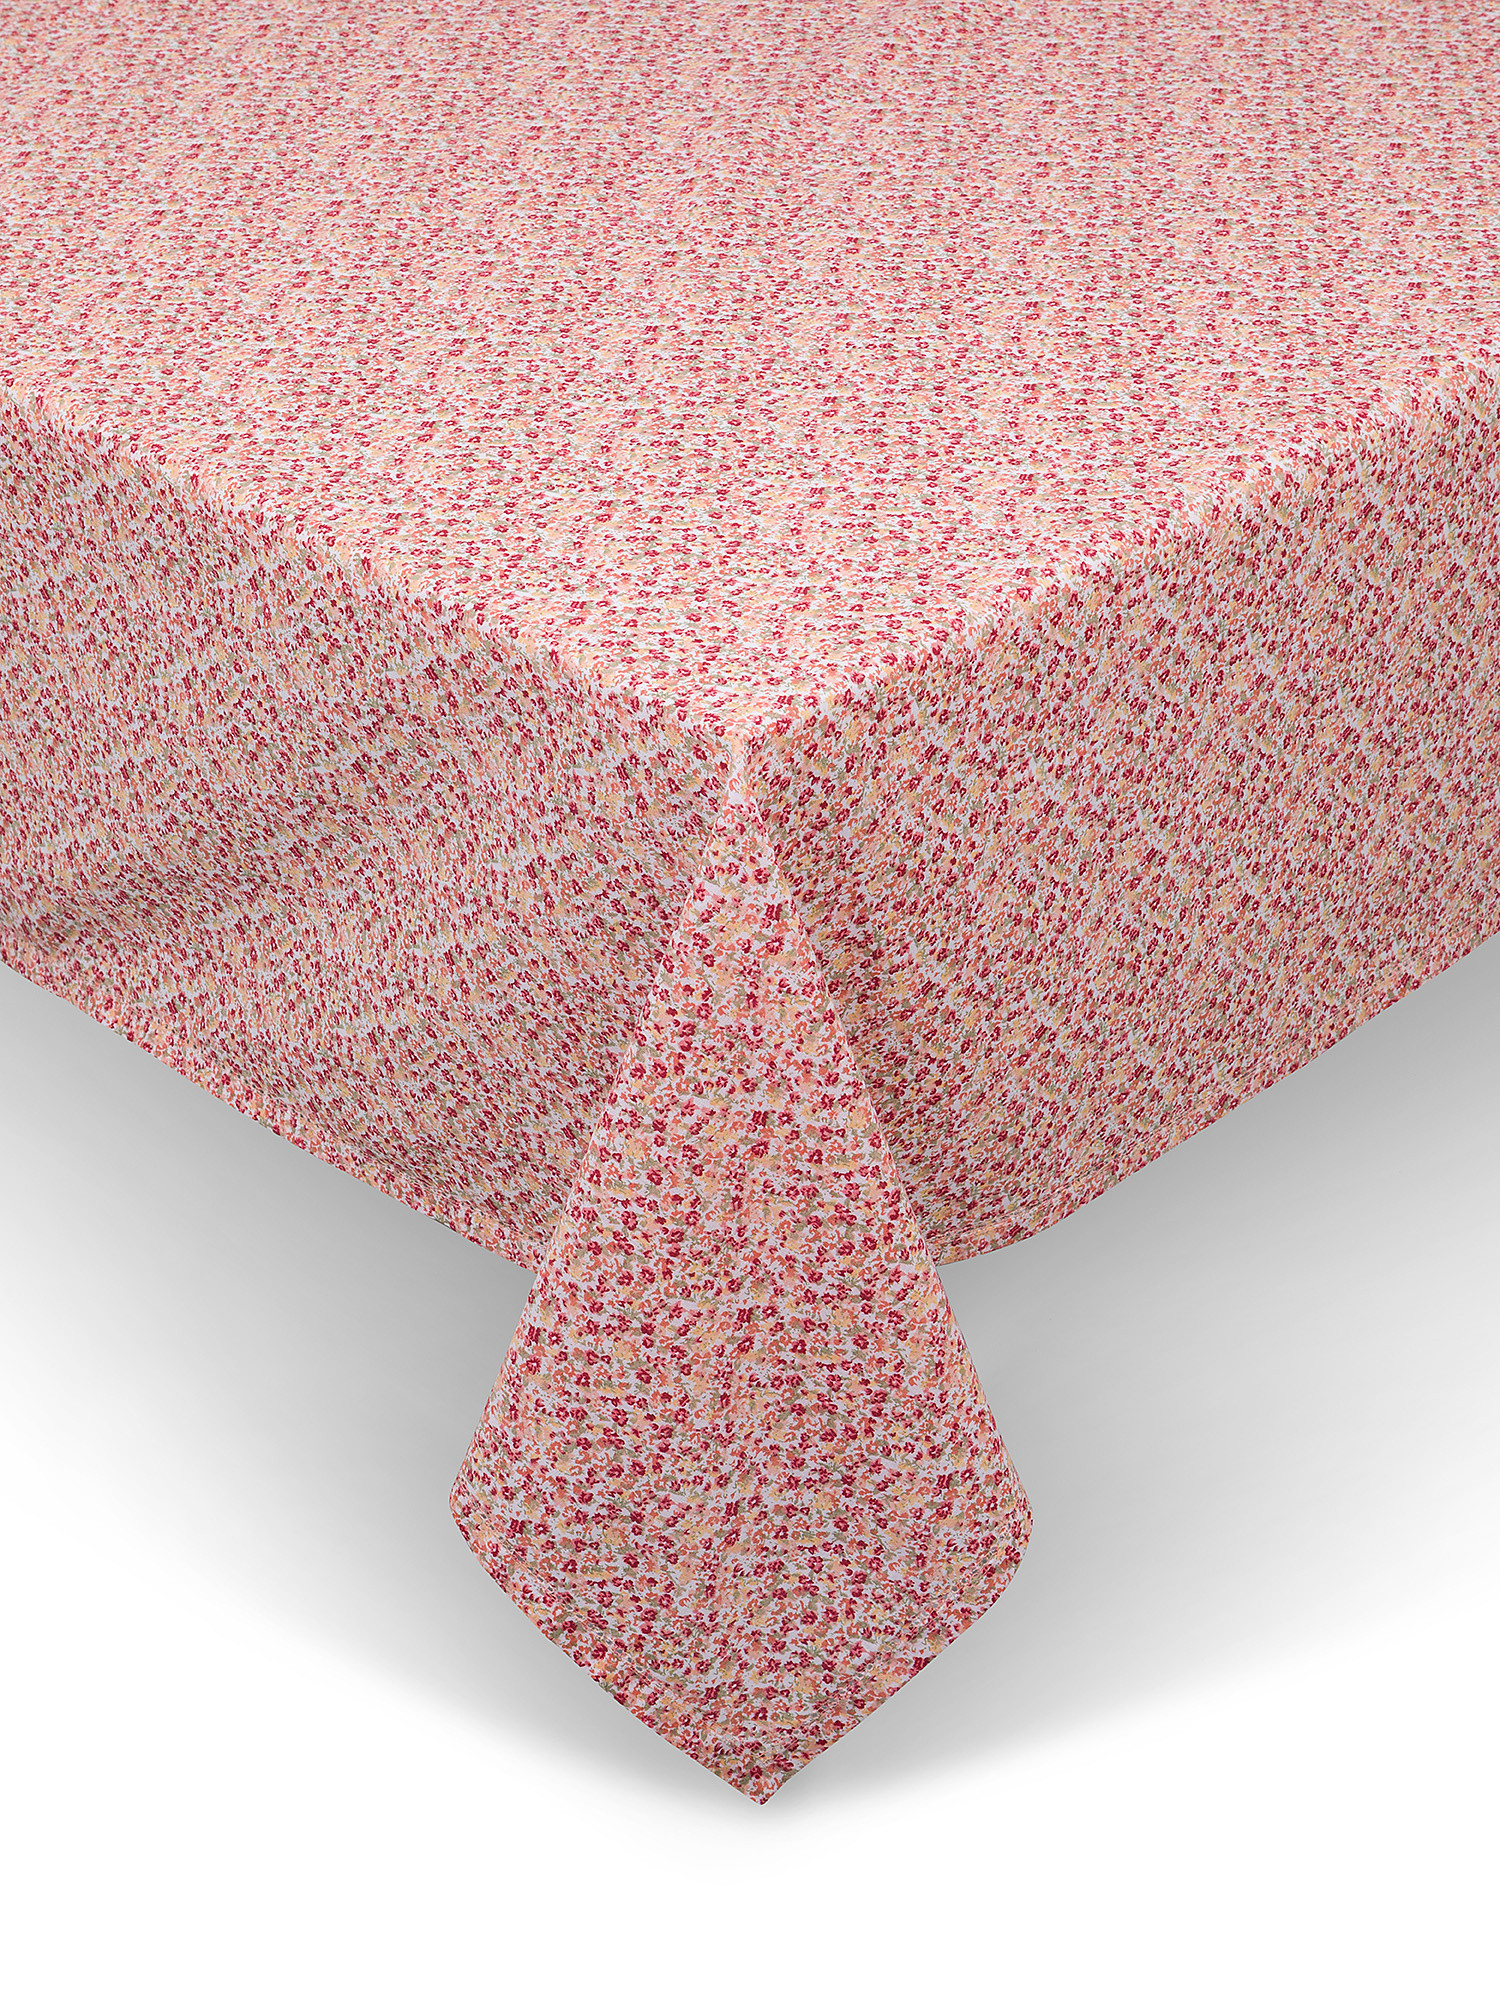 Tovaglia cotone idrorepellente stampa fiorellini, Rosa, large image number 0